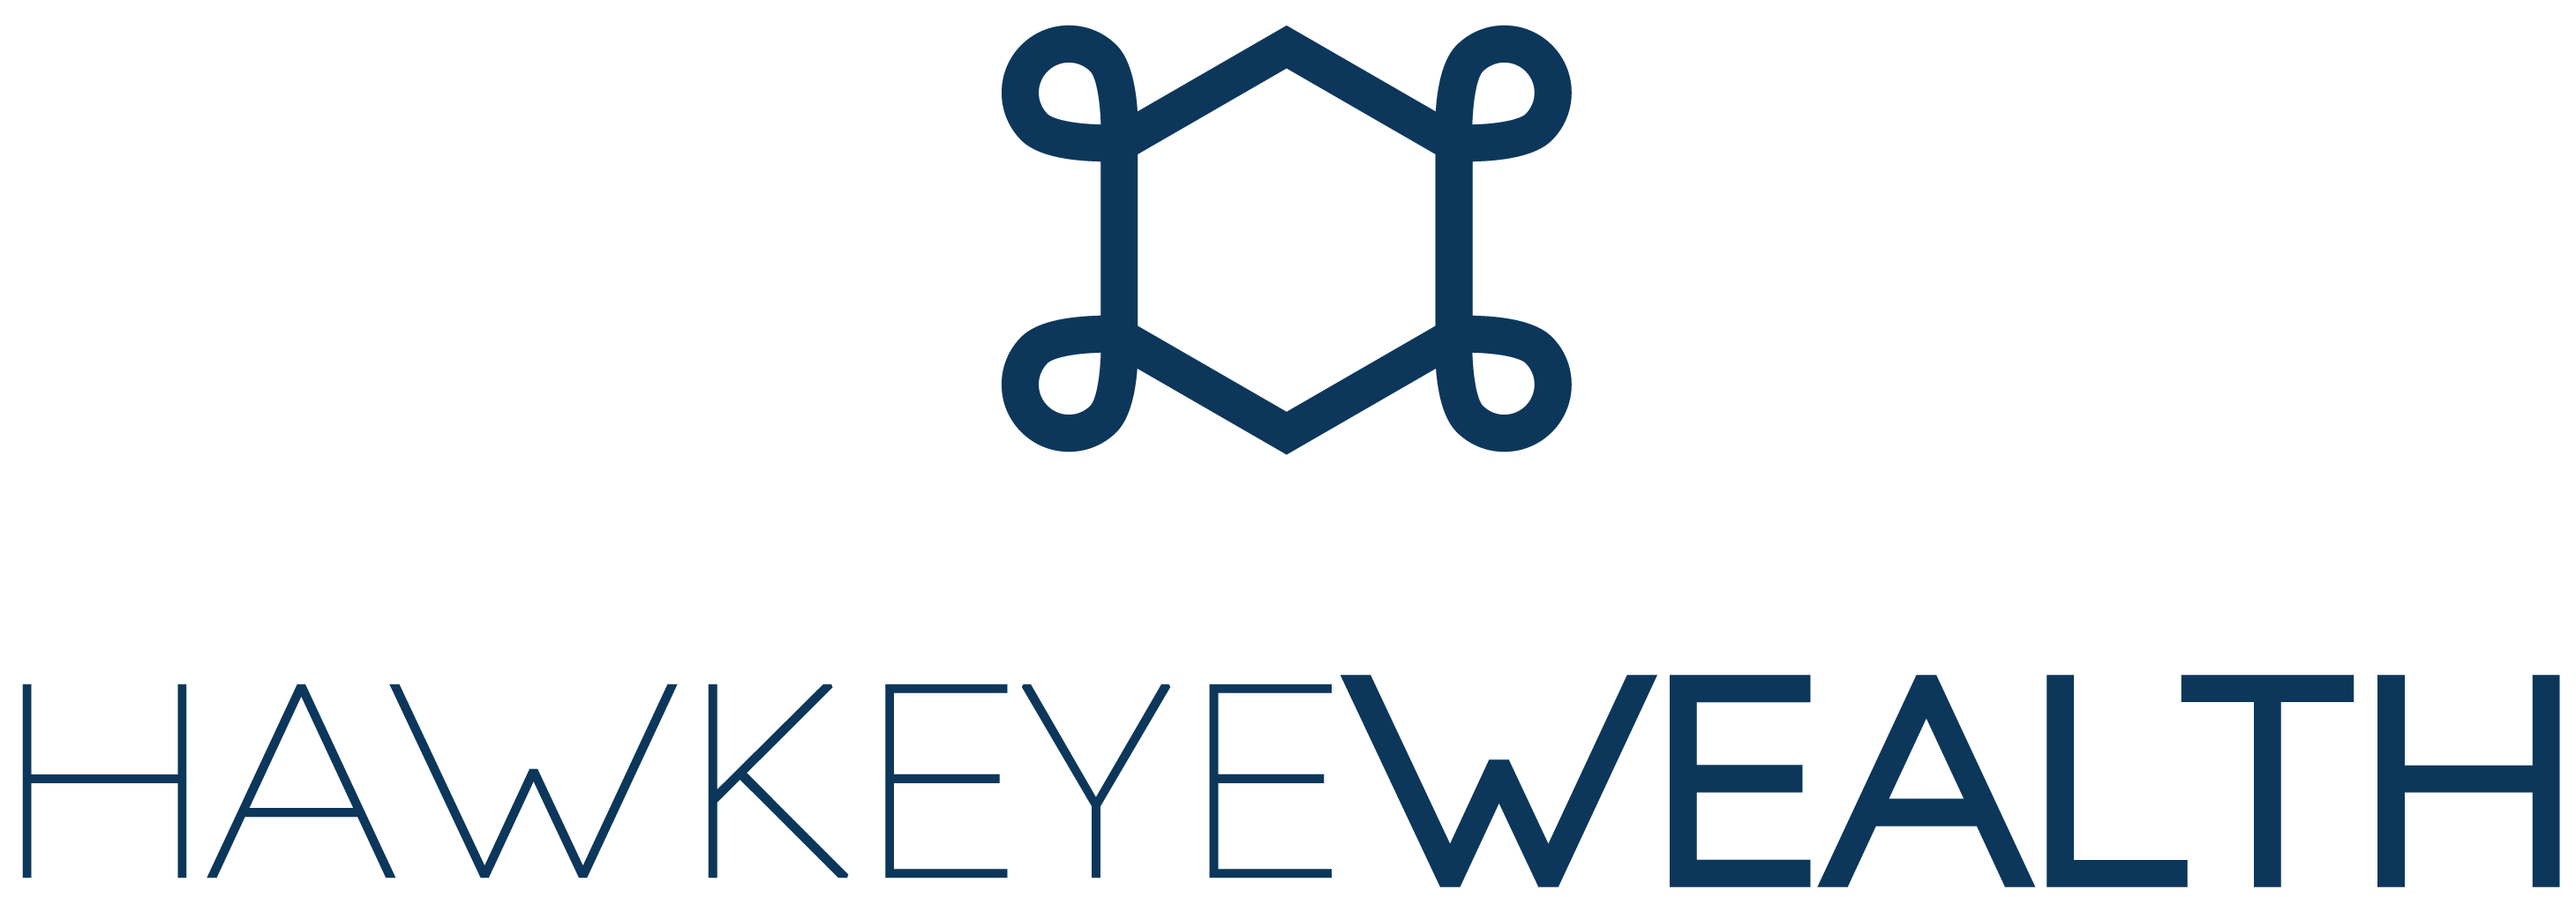 Hawkeye Wealth Logo